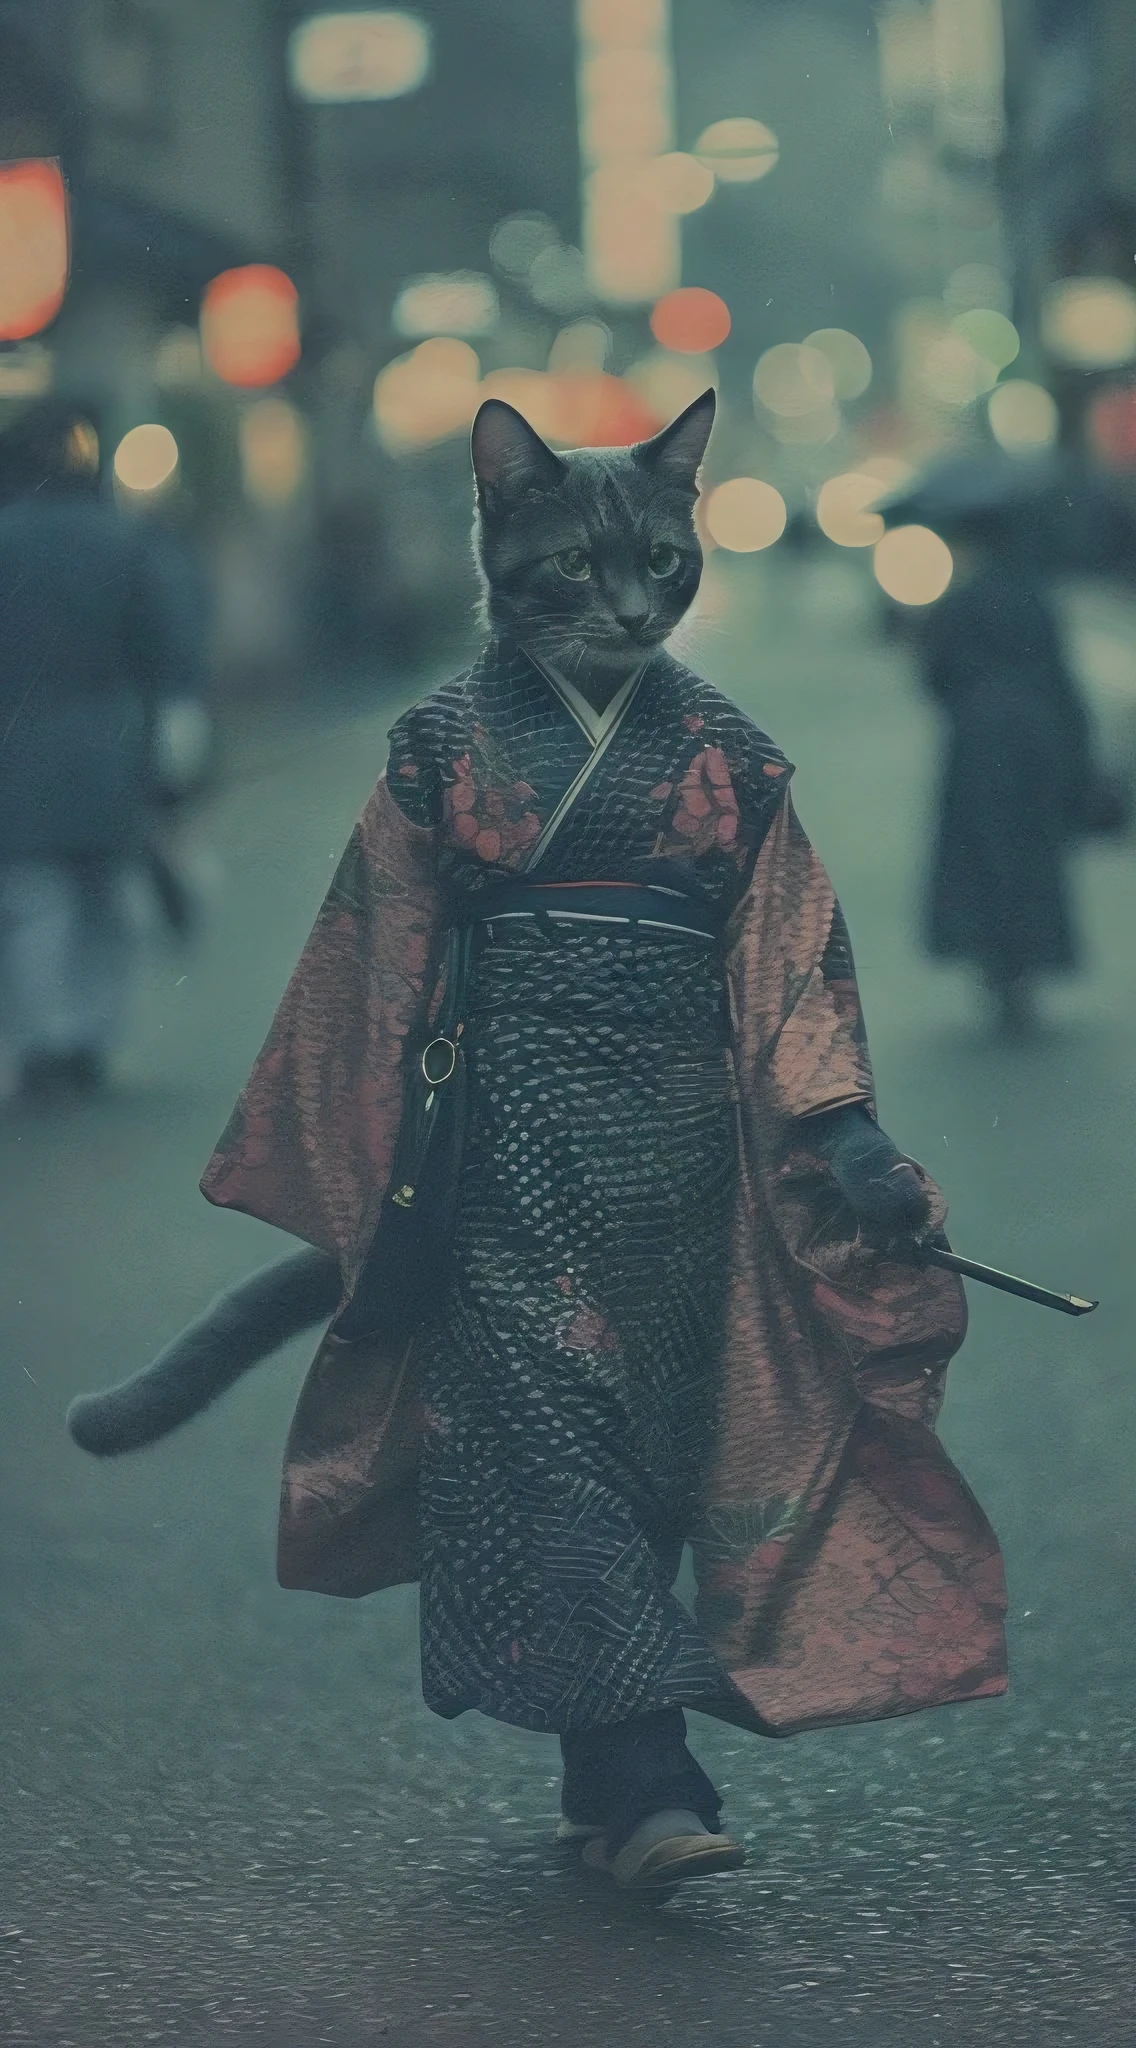 قطة بشرية ترتدي كيمونو جميل, المشي في شوارع كيوتو, صورة تناظرية, تفاصيل معقدة, الإضاءة السينمائية, لوحة الألوان الصامتة, حبوب الفيلم, عمق الميدان, جودة عالية, تحفة